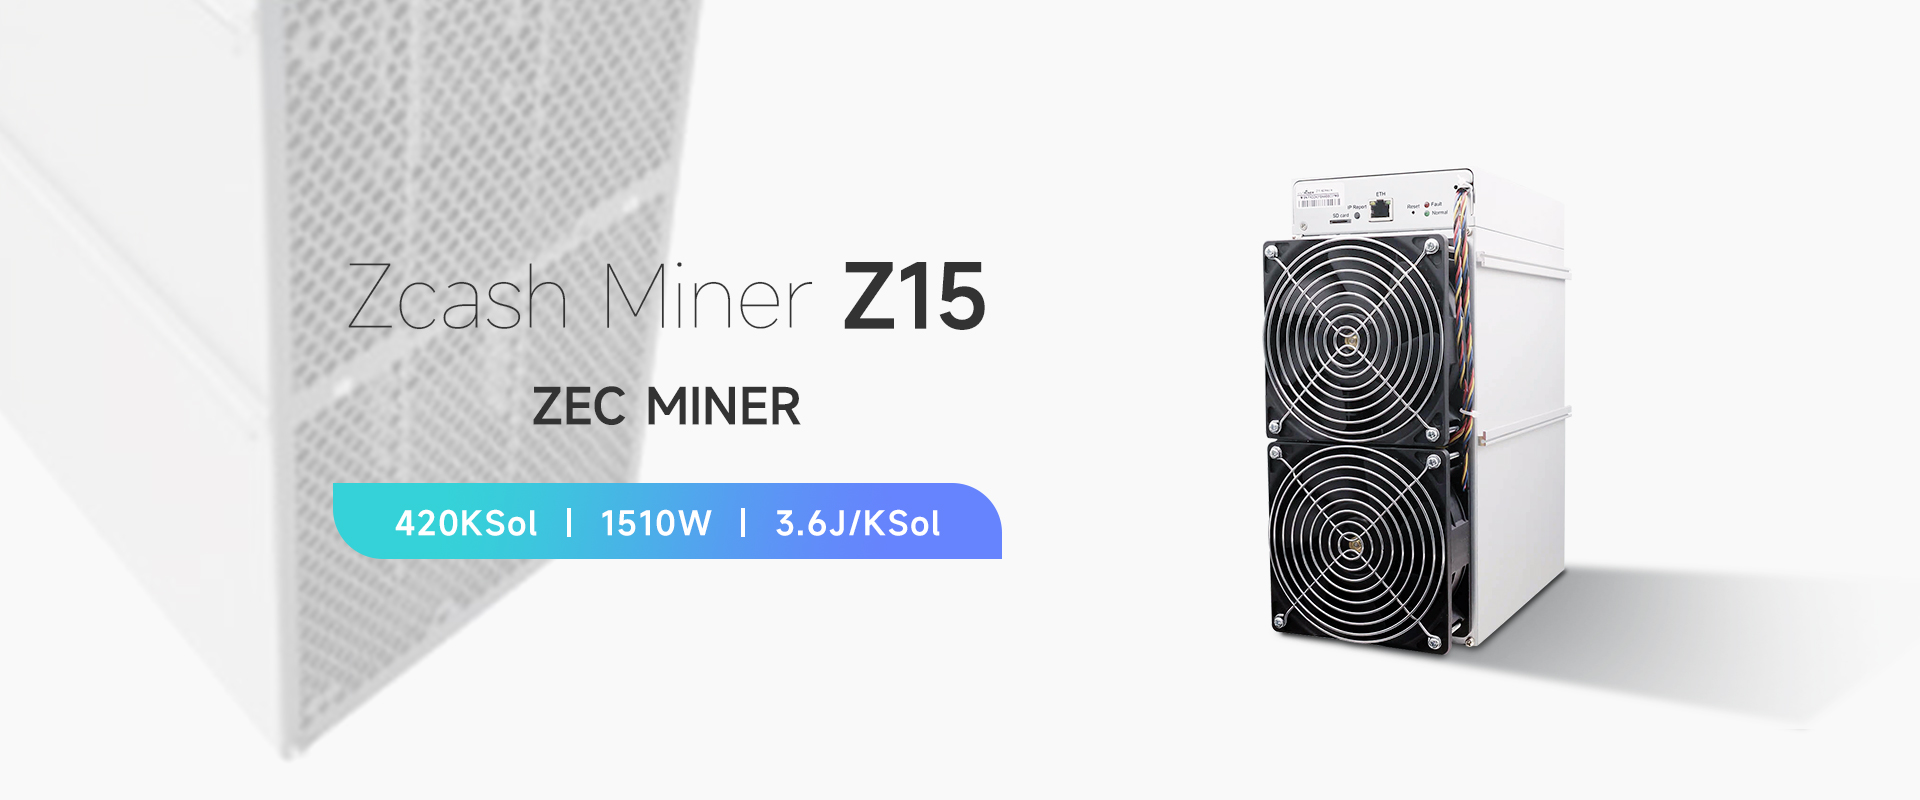 Zcash-Miner-Z15-01